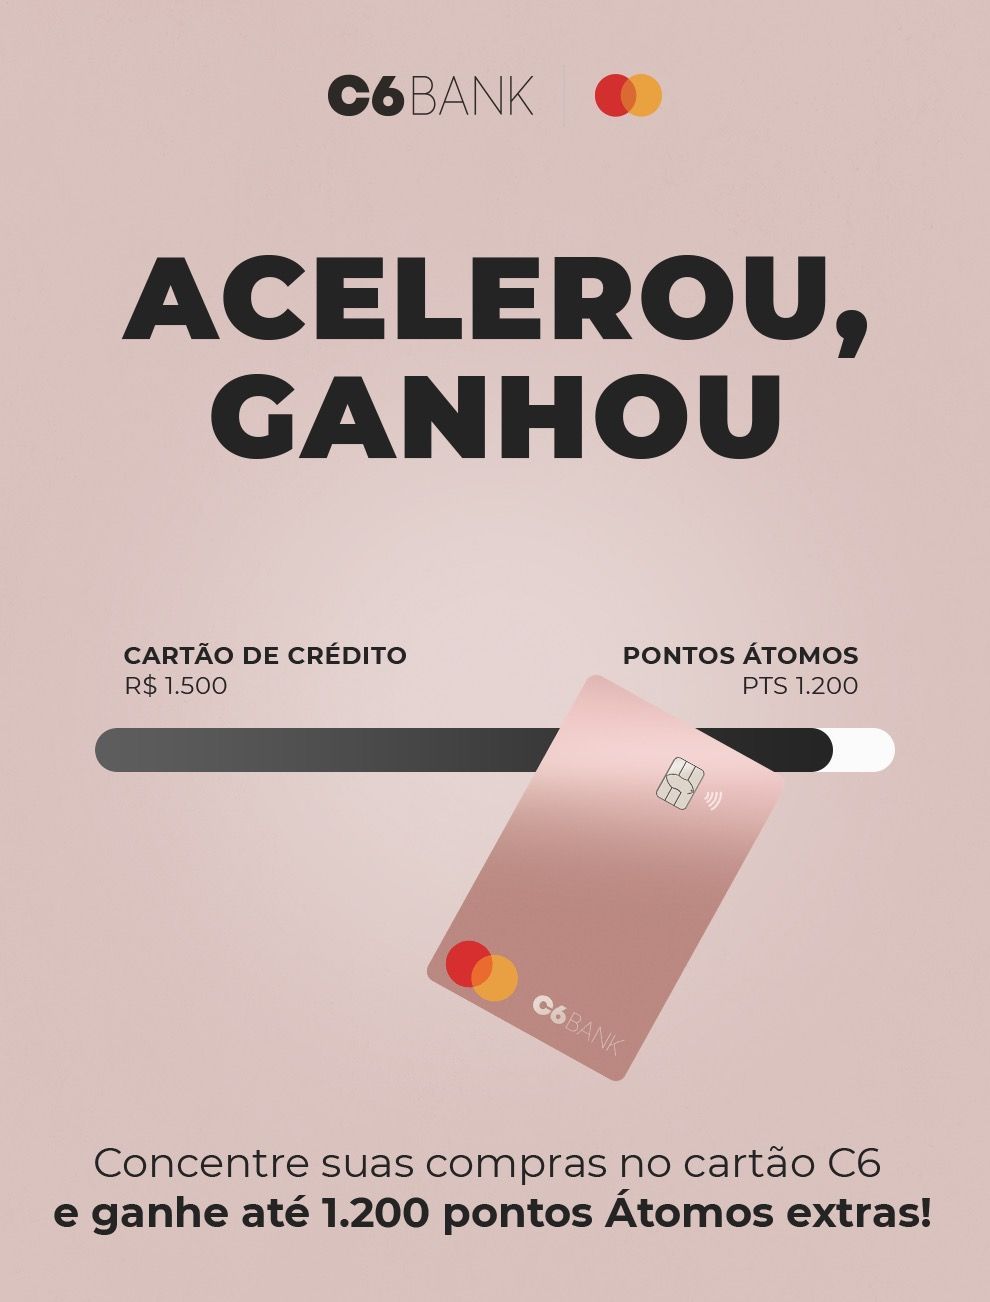 Acelerou Ganhou C6 Bank